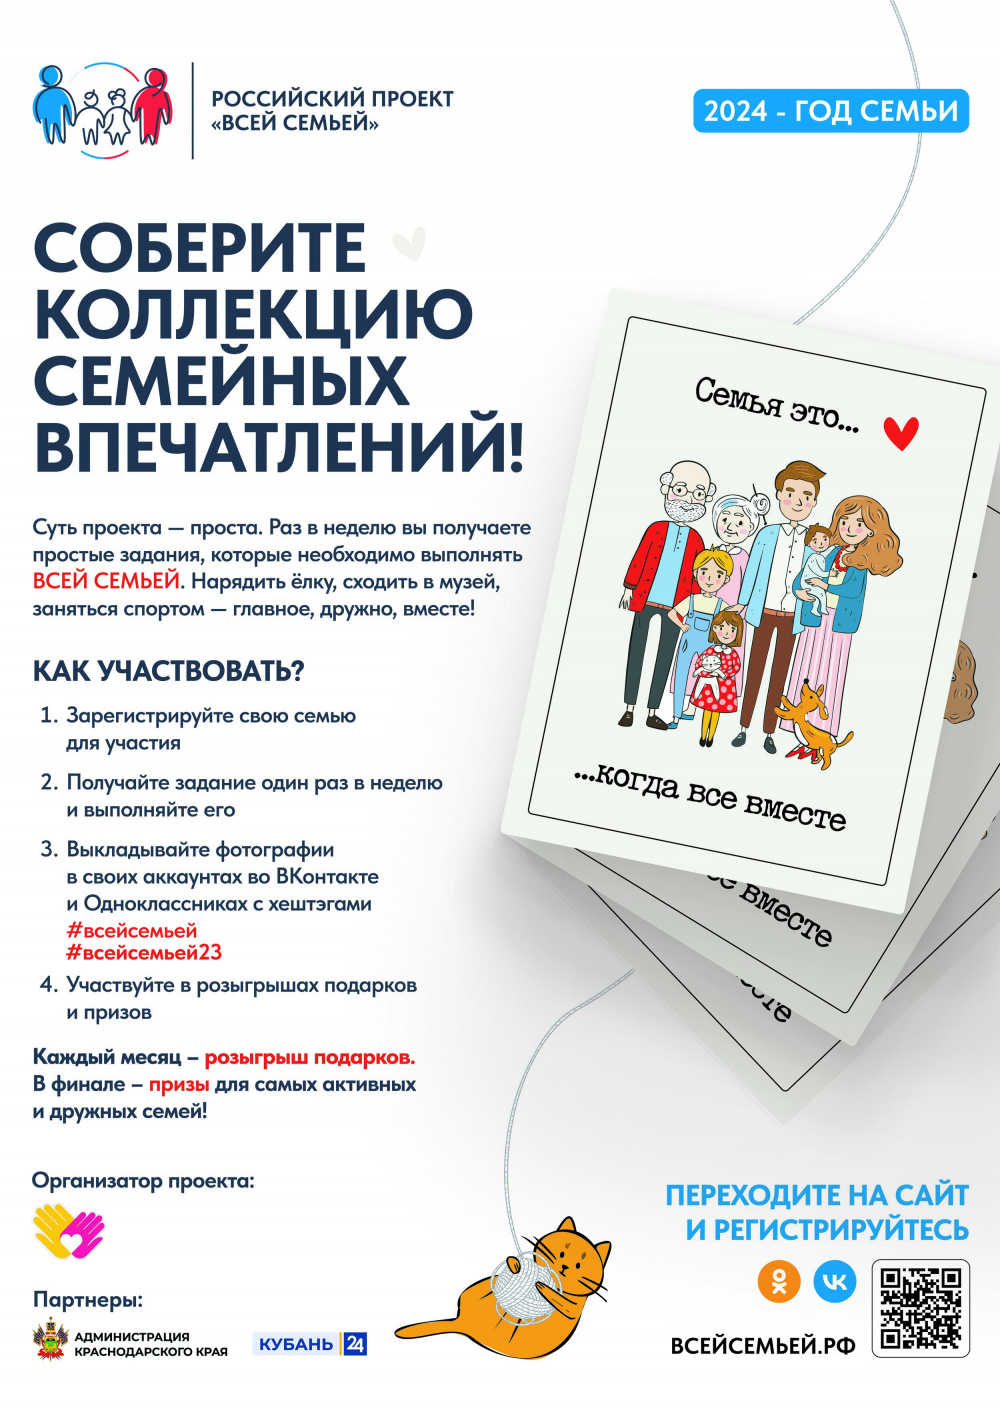 Всероссийский семейный проект «Всей семьей»